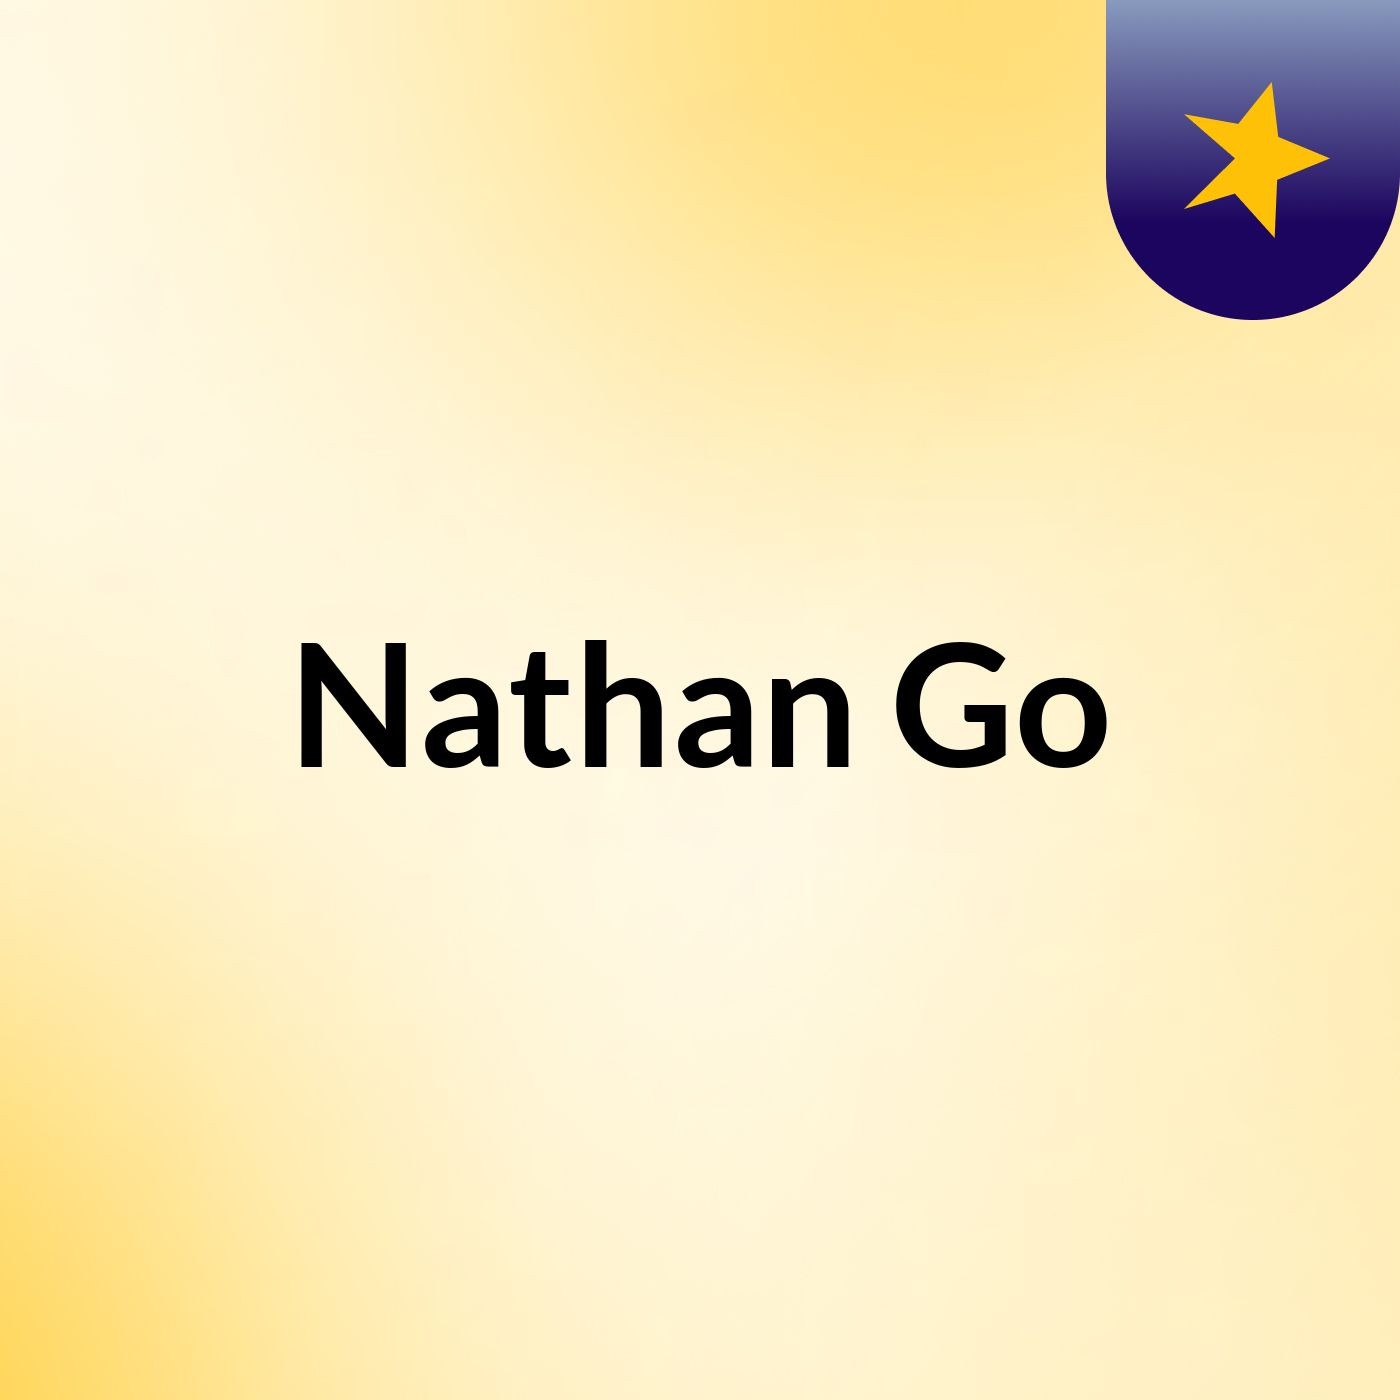 Nathan Go